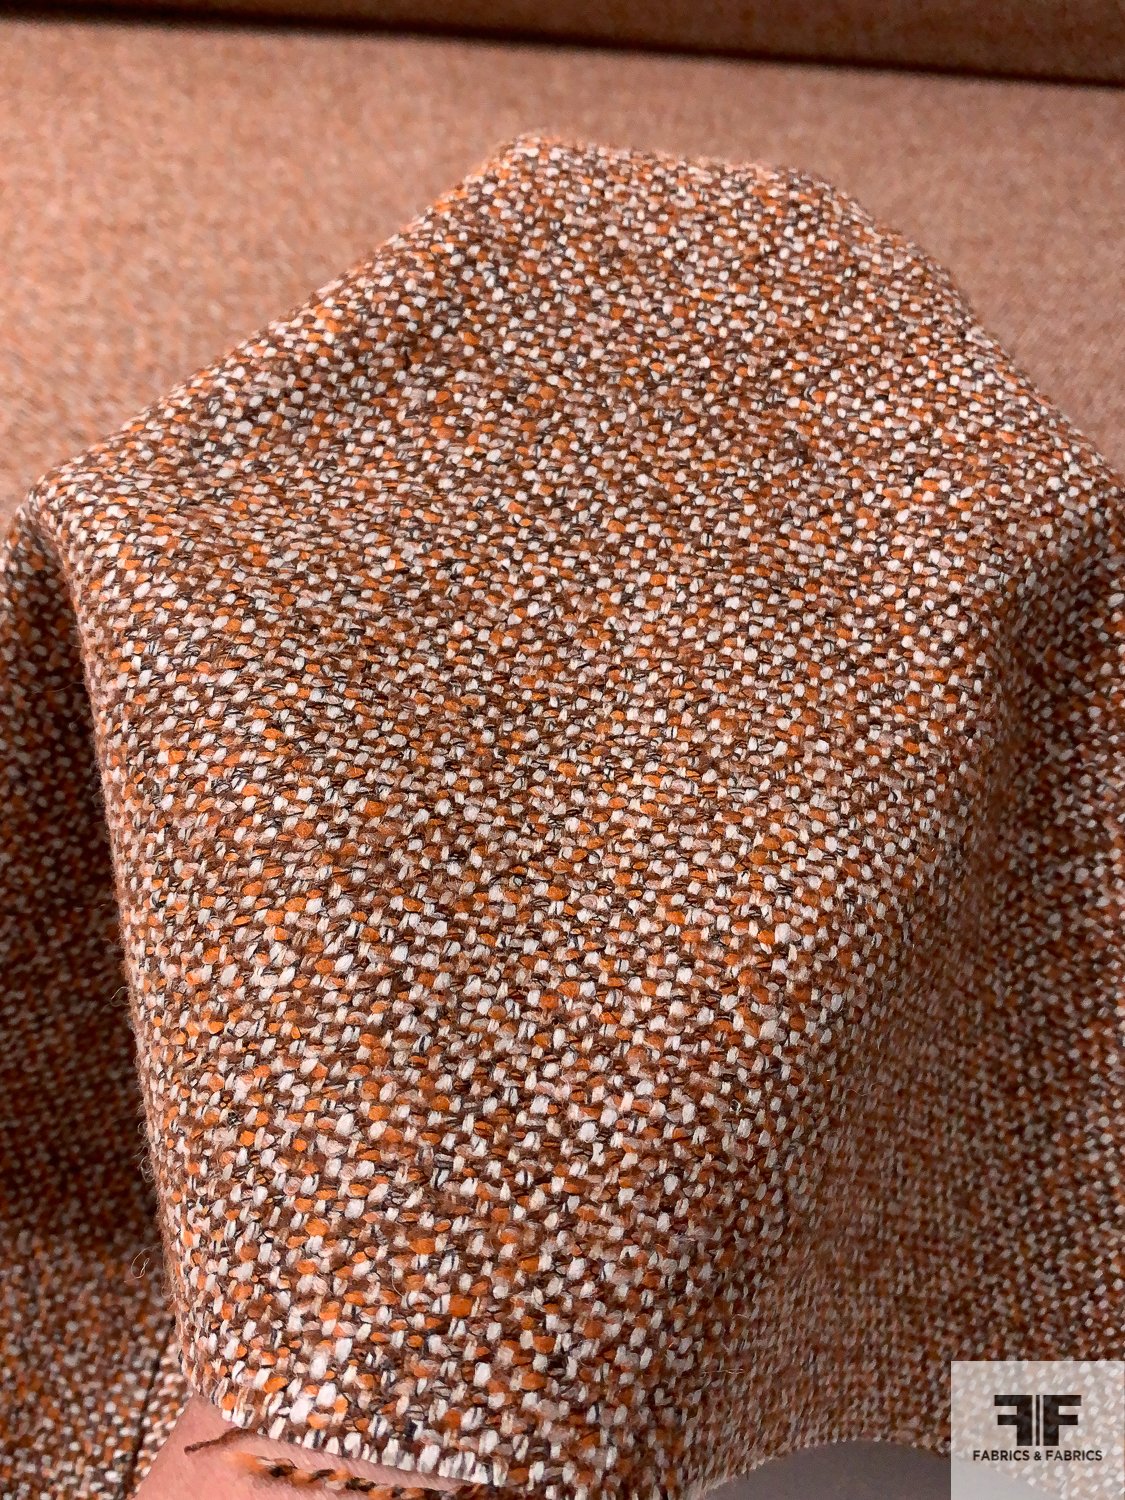 Italian Basic Virgin Wool Blend Ladies Tweed Suiting - Orange / Brown / Light Grey